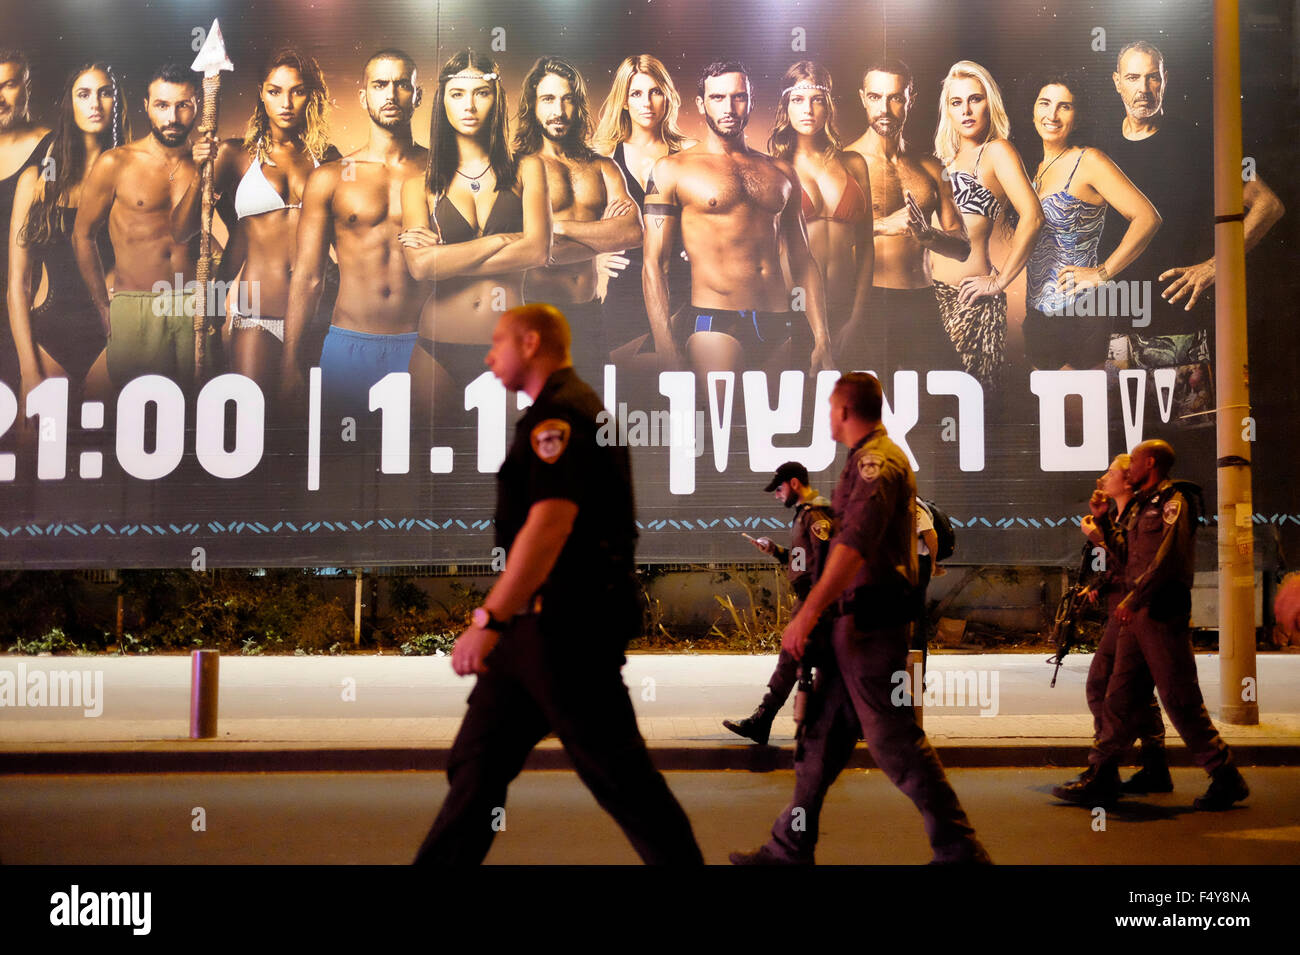 La polizia israeliana a piedi passato un enorme cartellone pubblicitario TV israeliana reality show basato sul popolare internazionale formato superstite nel centro di Tel Aviv. Israele Foto Stock